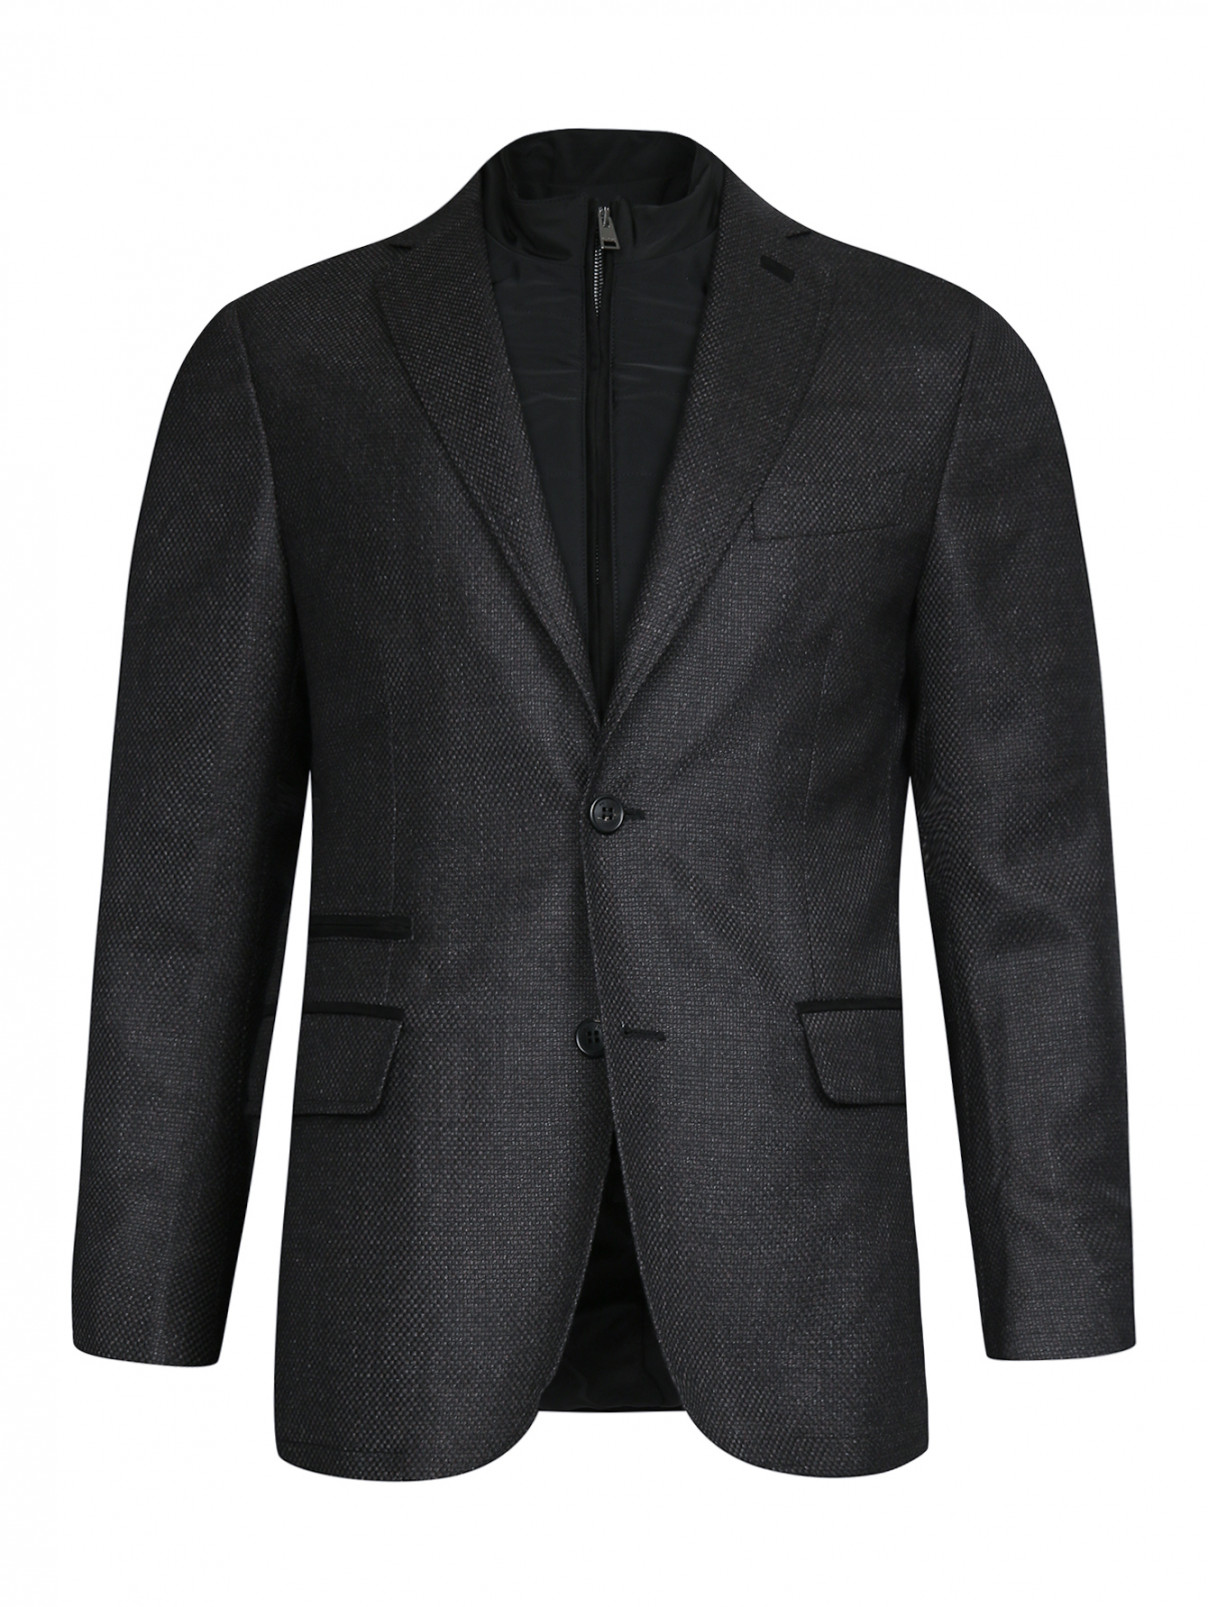 Пиджак из шерсти с подстежкой Pal Zileri  –  Общий вид  – Цвет:  Коричневый